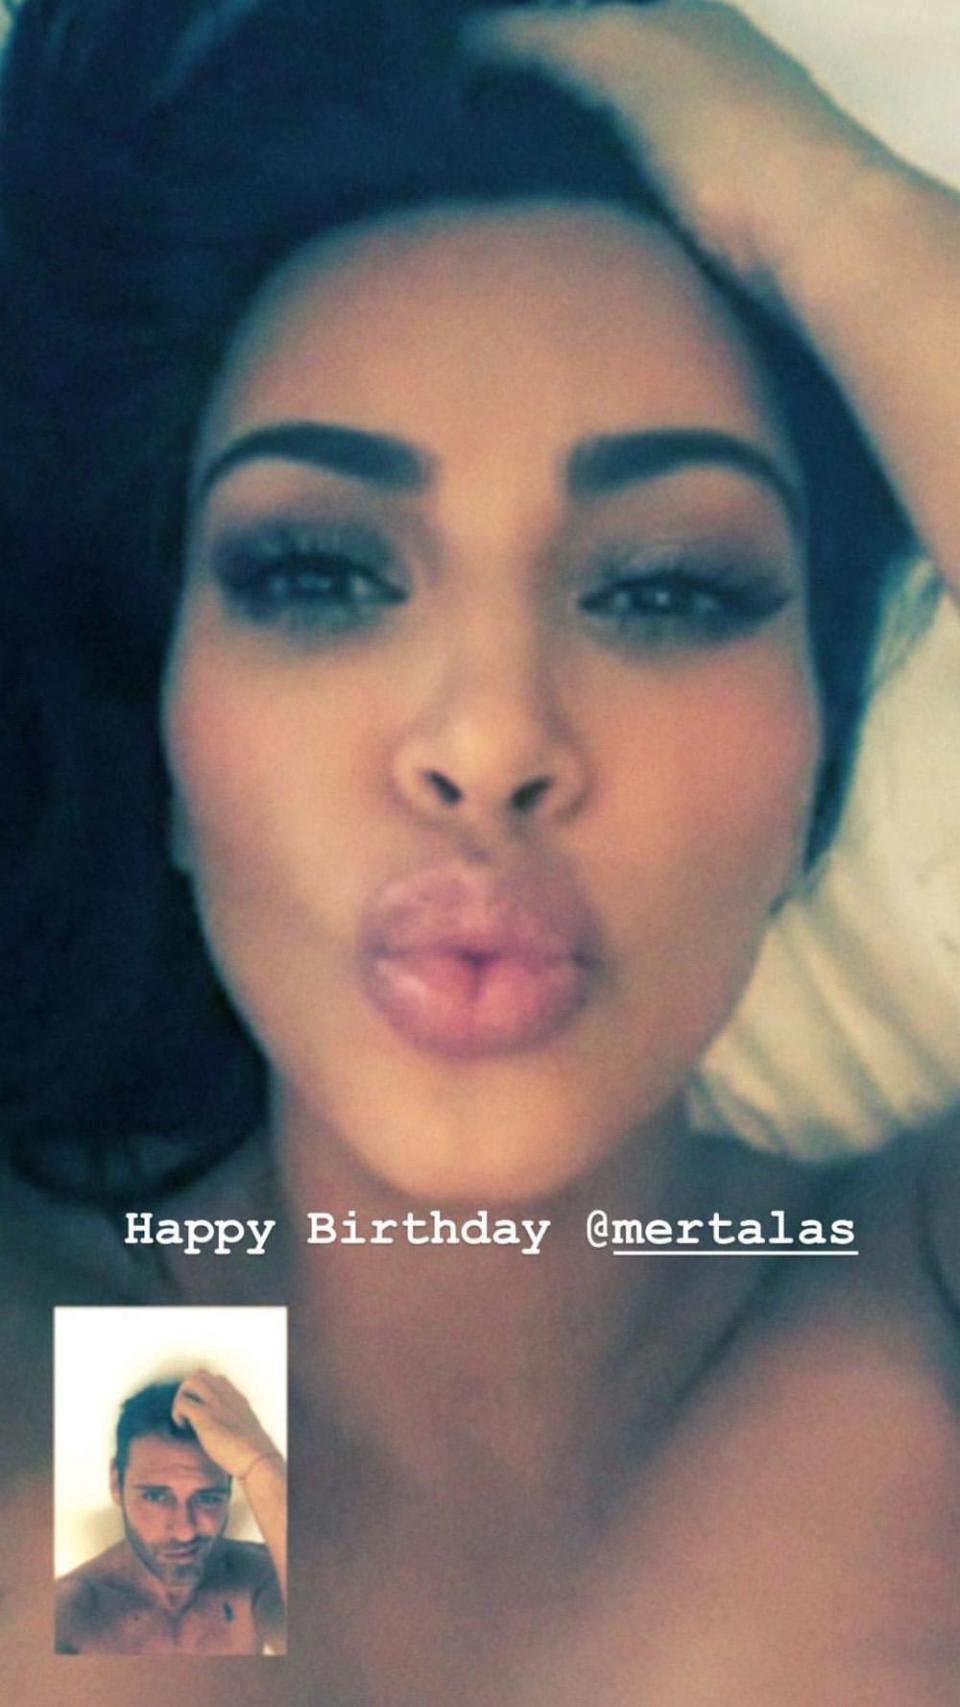 (Instagram/ Kim Kardashian)